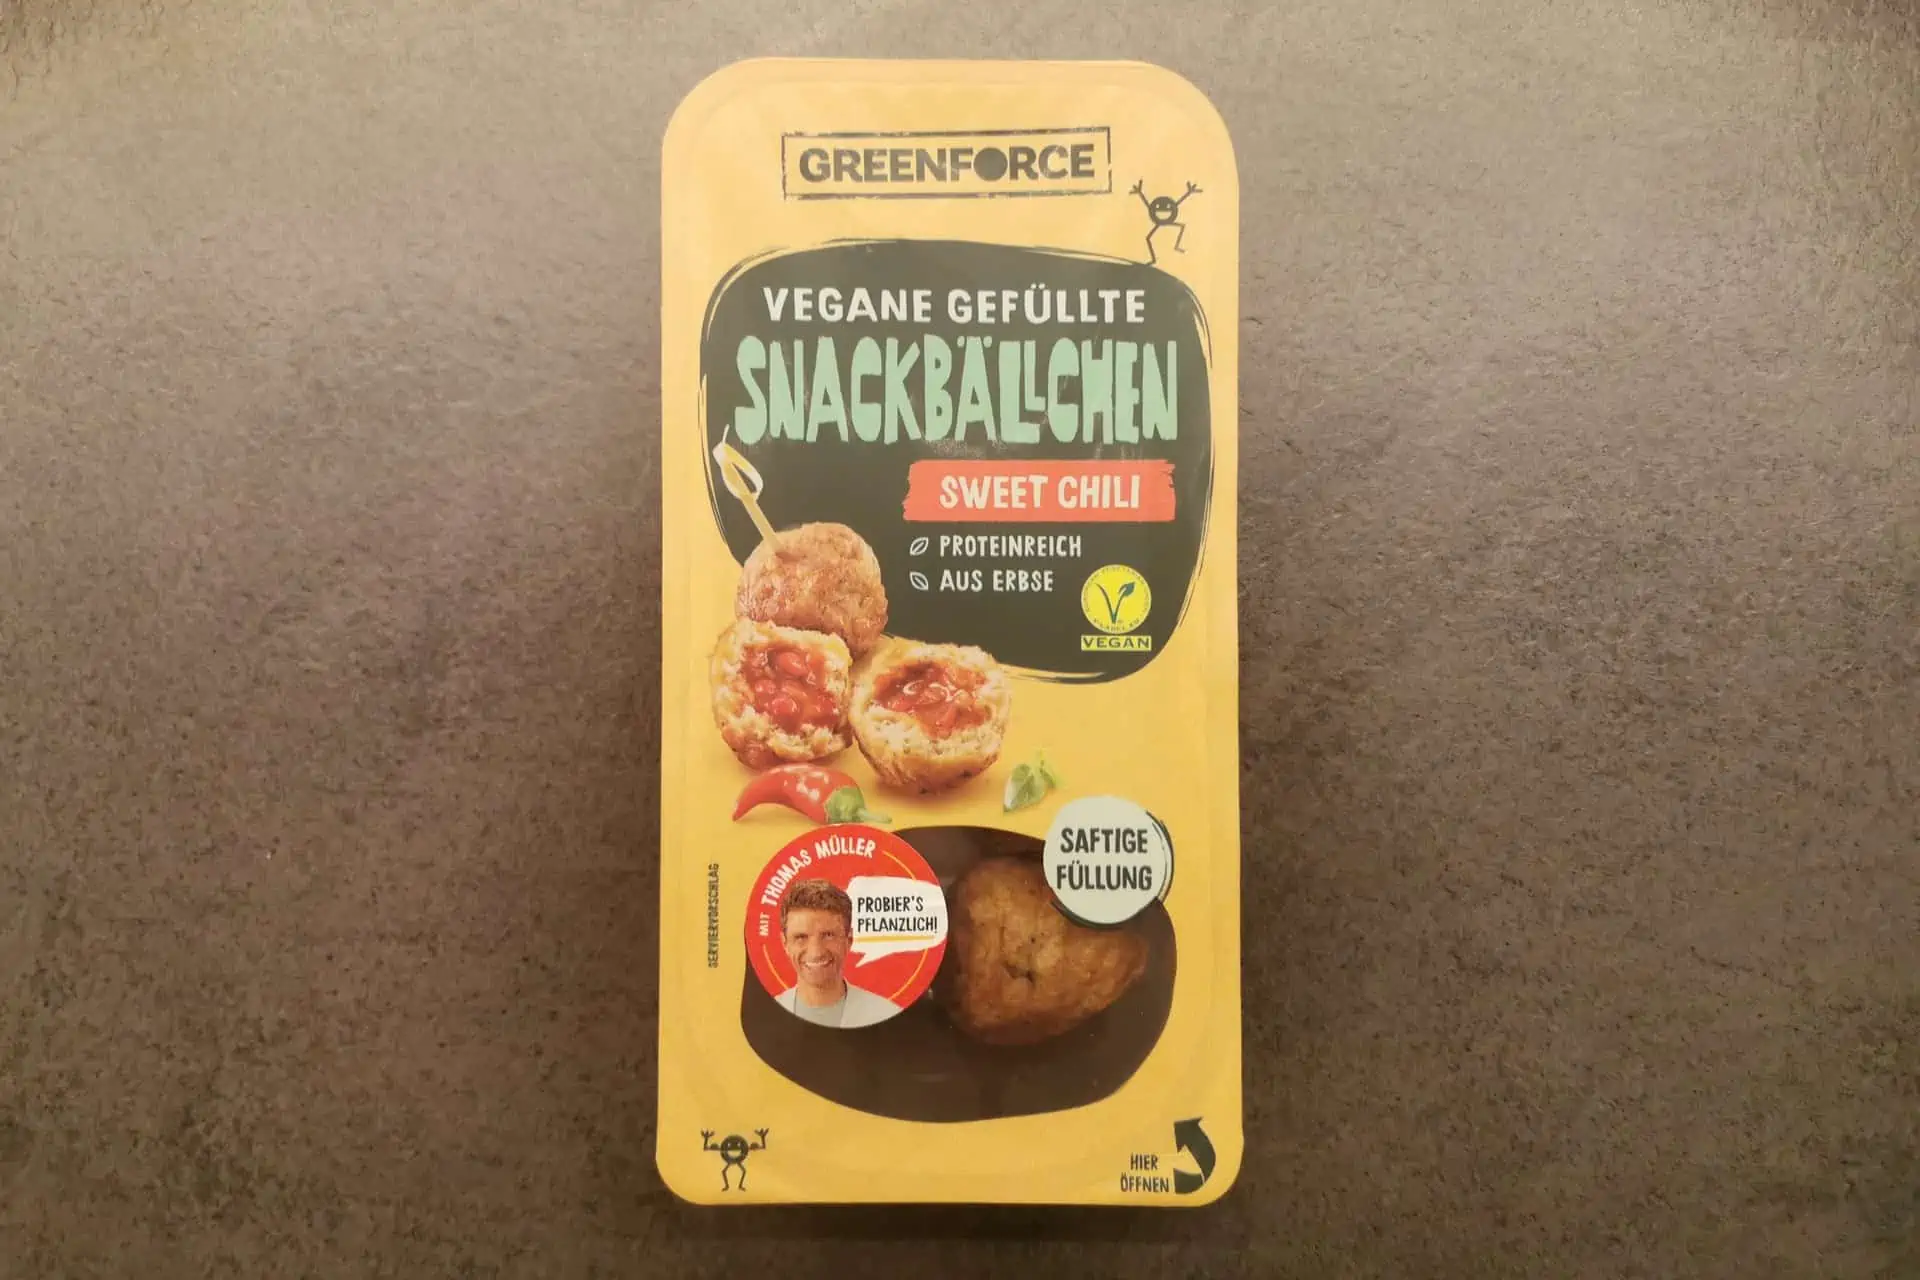 Greenforce: Vegane gefüllte Snackbällchen Sweet Chili